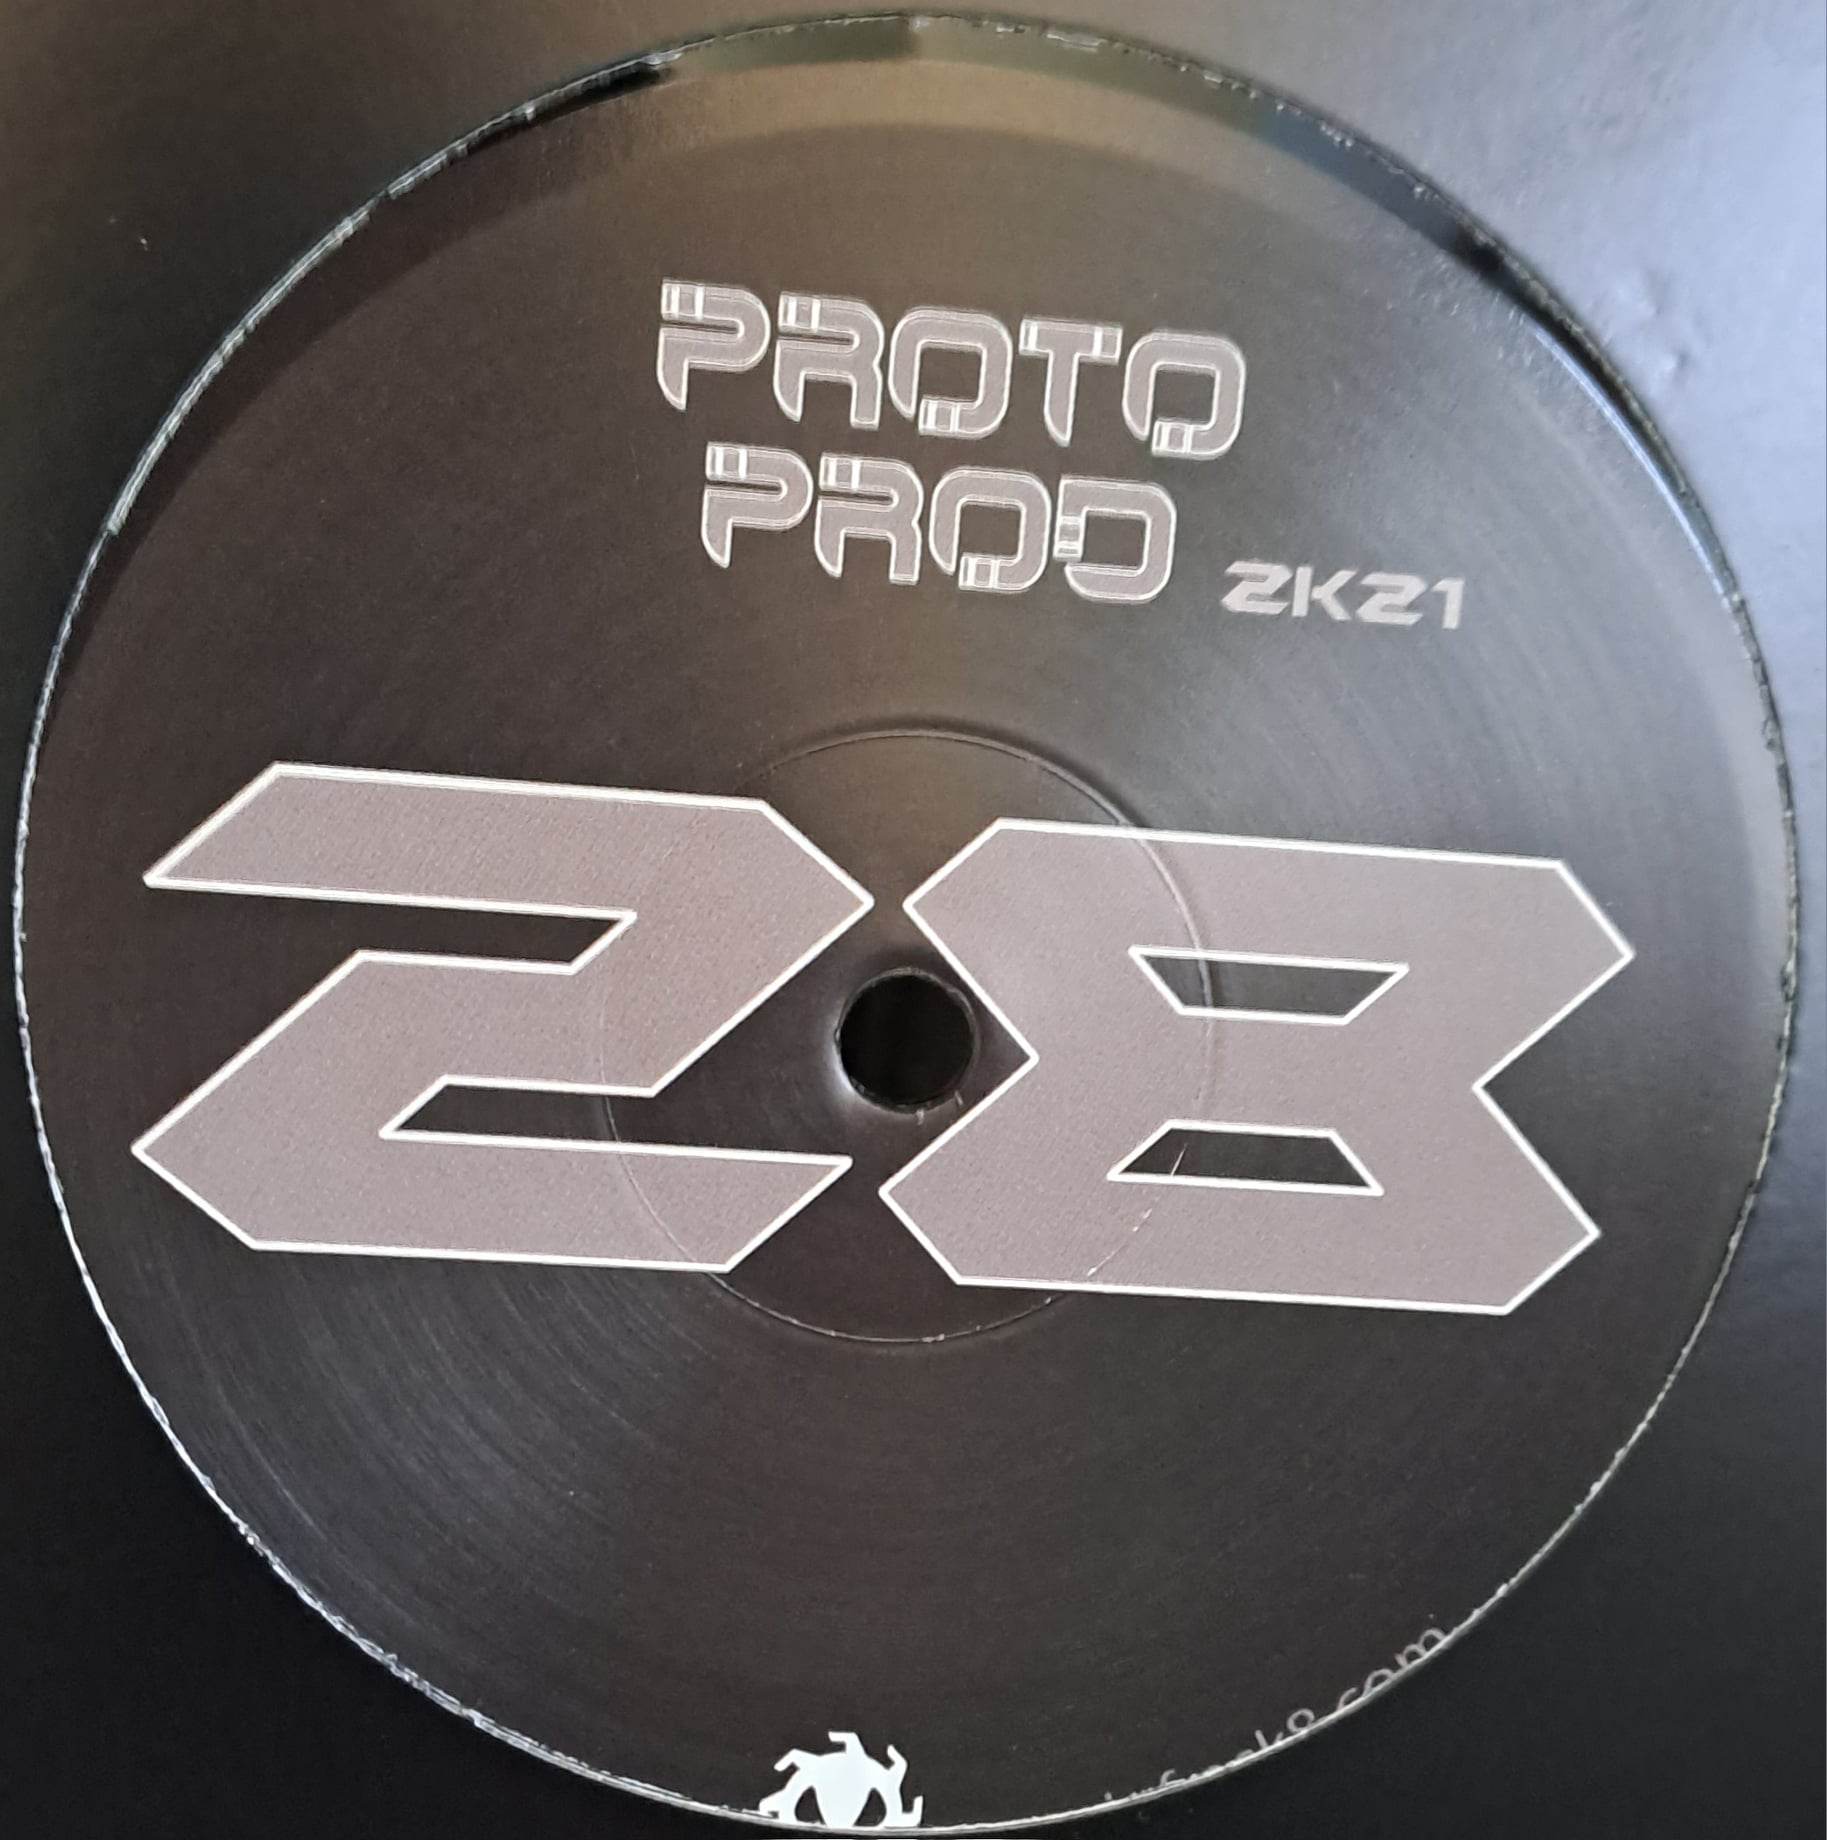 Protoprod 28 RP (toute dernière copie en stock) - vinyle tribecore